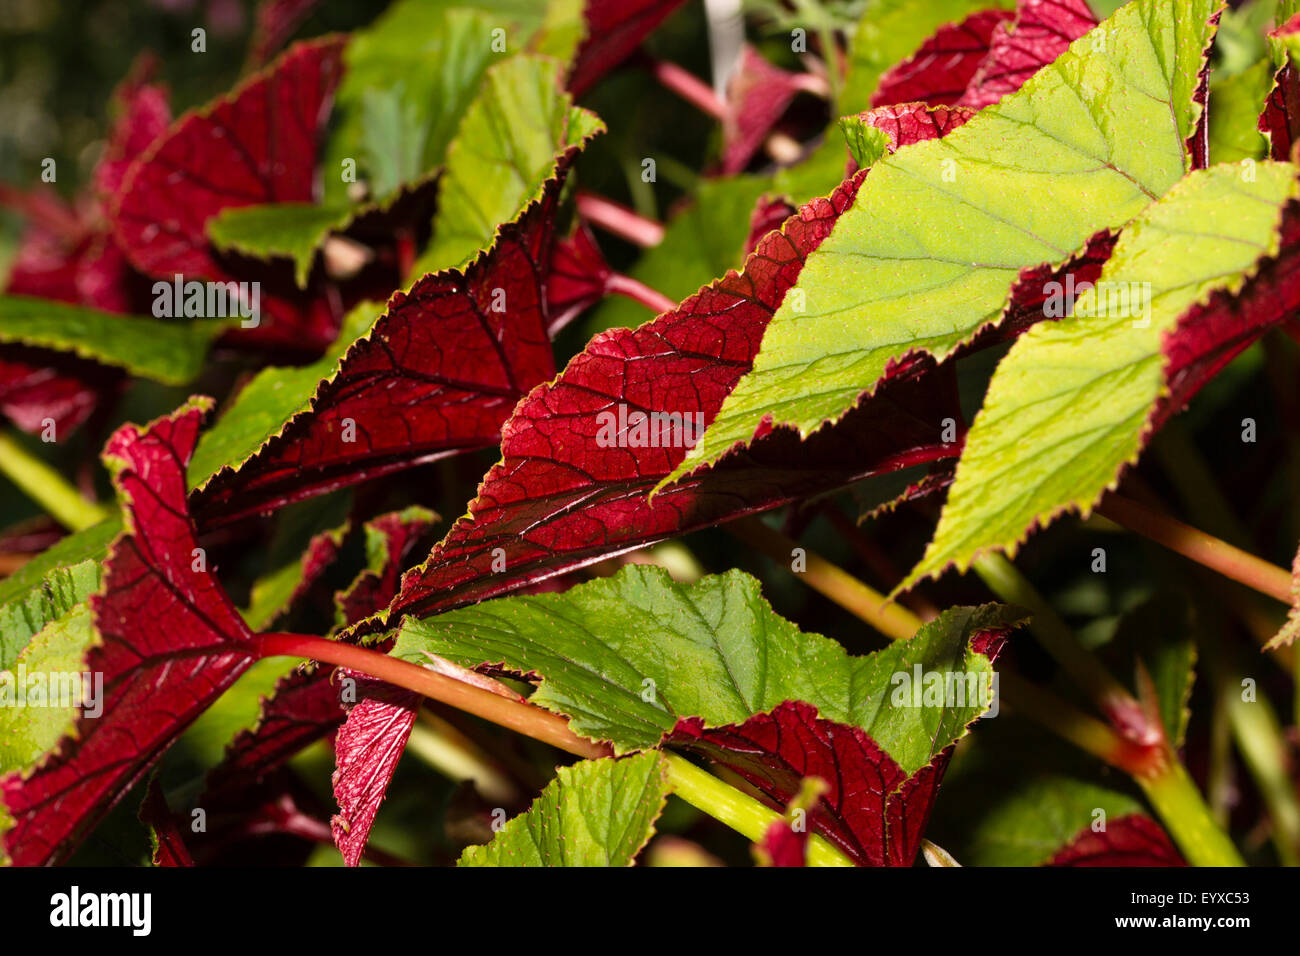 Ricco di colore rosso scuro inferiori aggiungere attrazione per le grandi foglie in forma selezionata di Begonia grandis var. evansiana 'Sapporo' Foto Stock